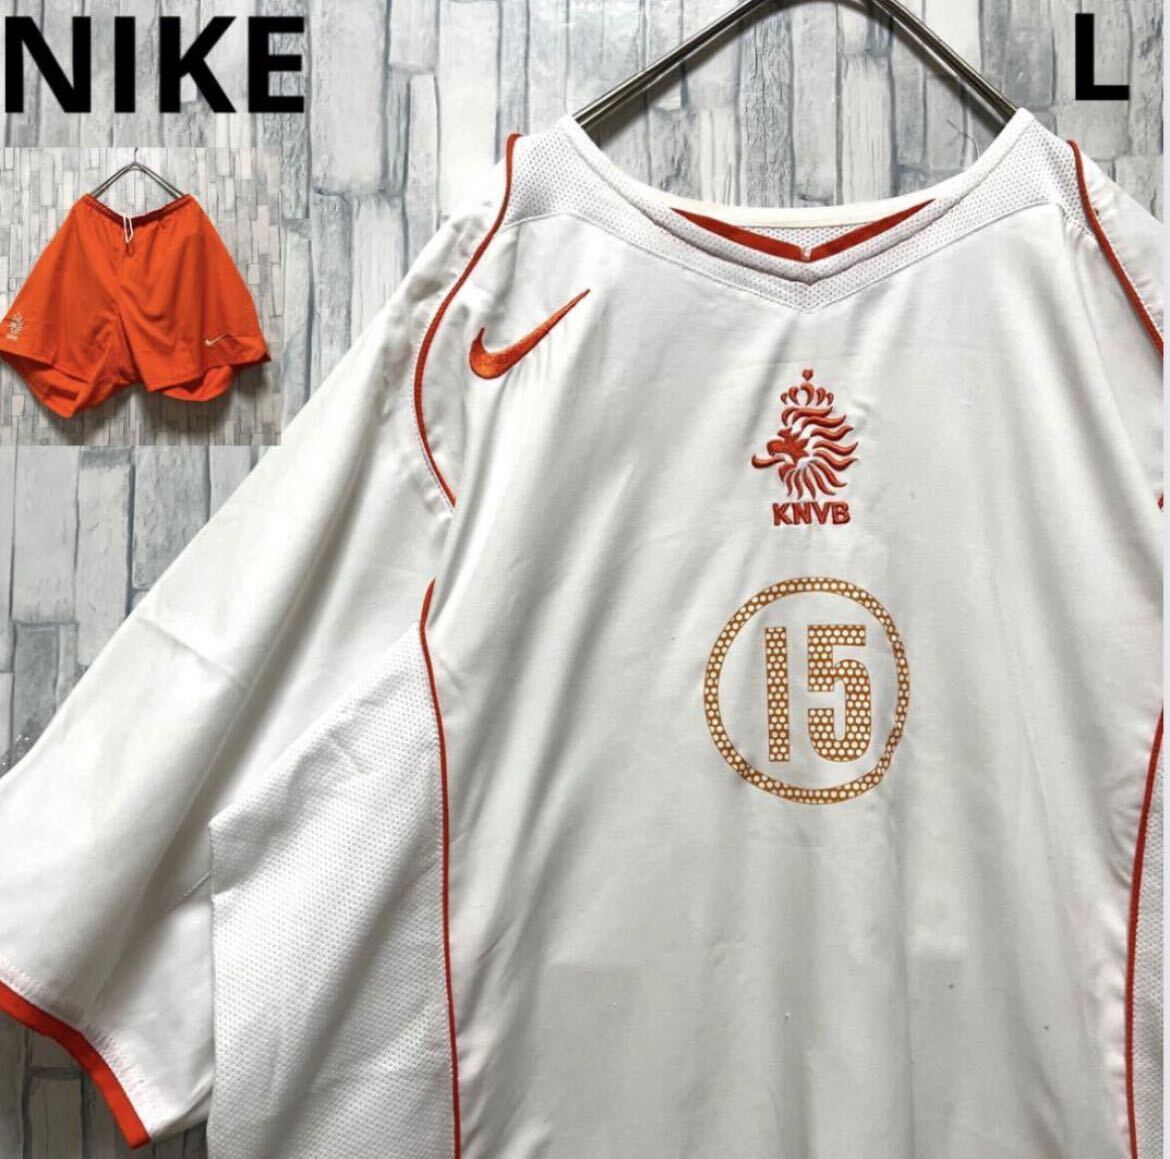 NIKE ナイキ サッカー オランダ代表 ユニフォーム ゲームシャツ サッカーパンツ 上下 セットアップ サイズL 刺繍ロゴ 半袖 2004 送料無料